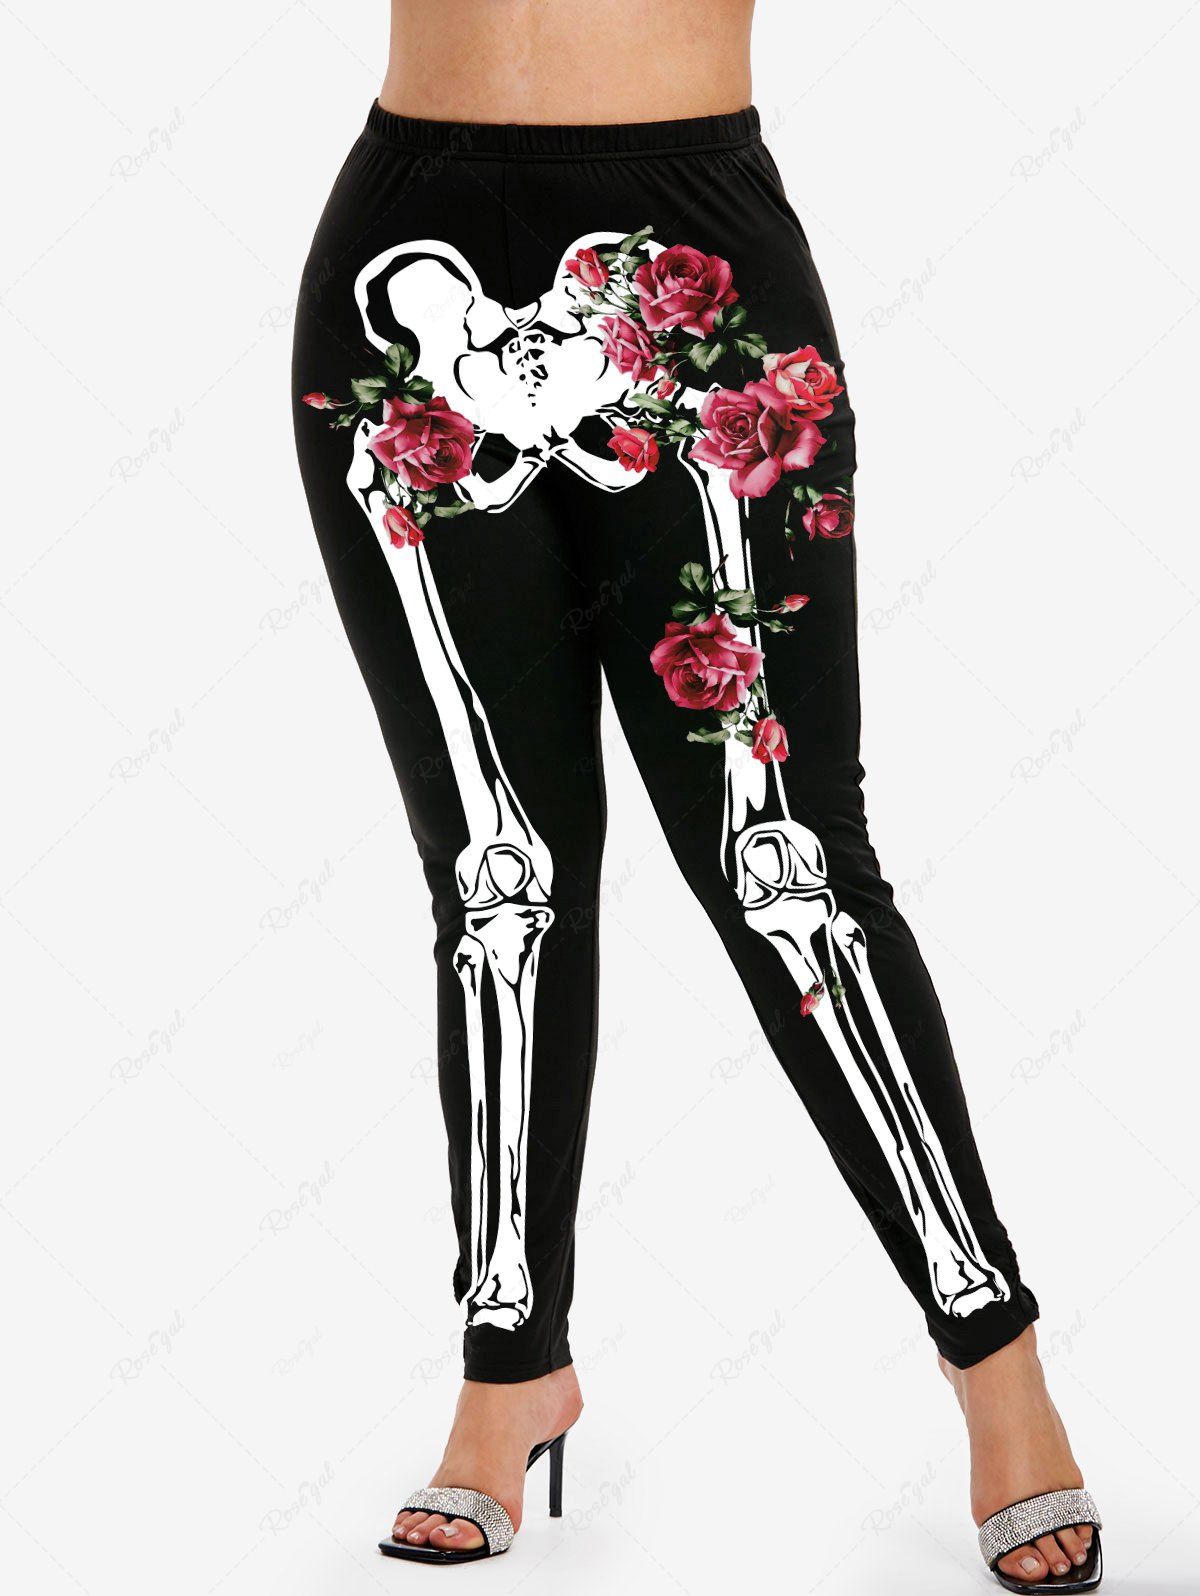 Skeleton Leggings for Women